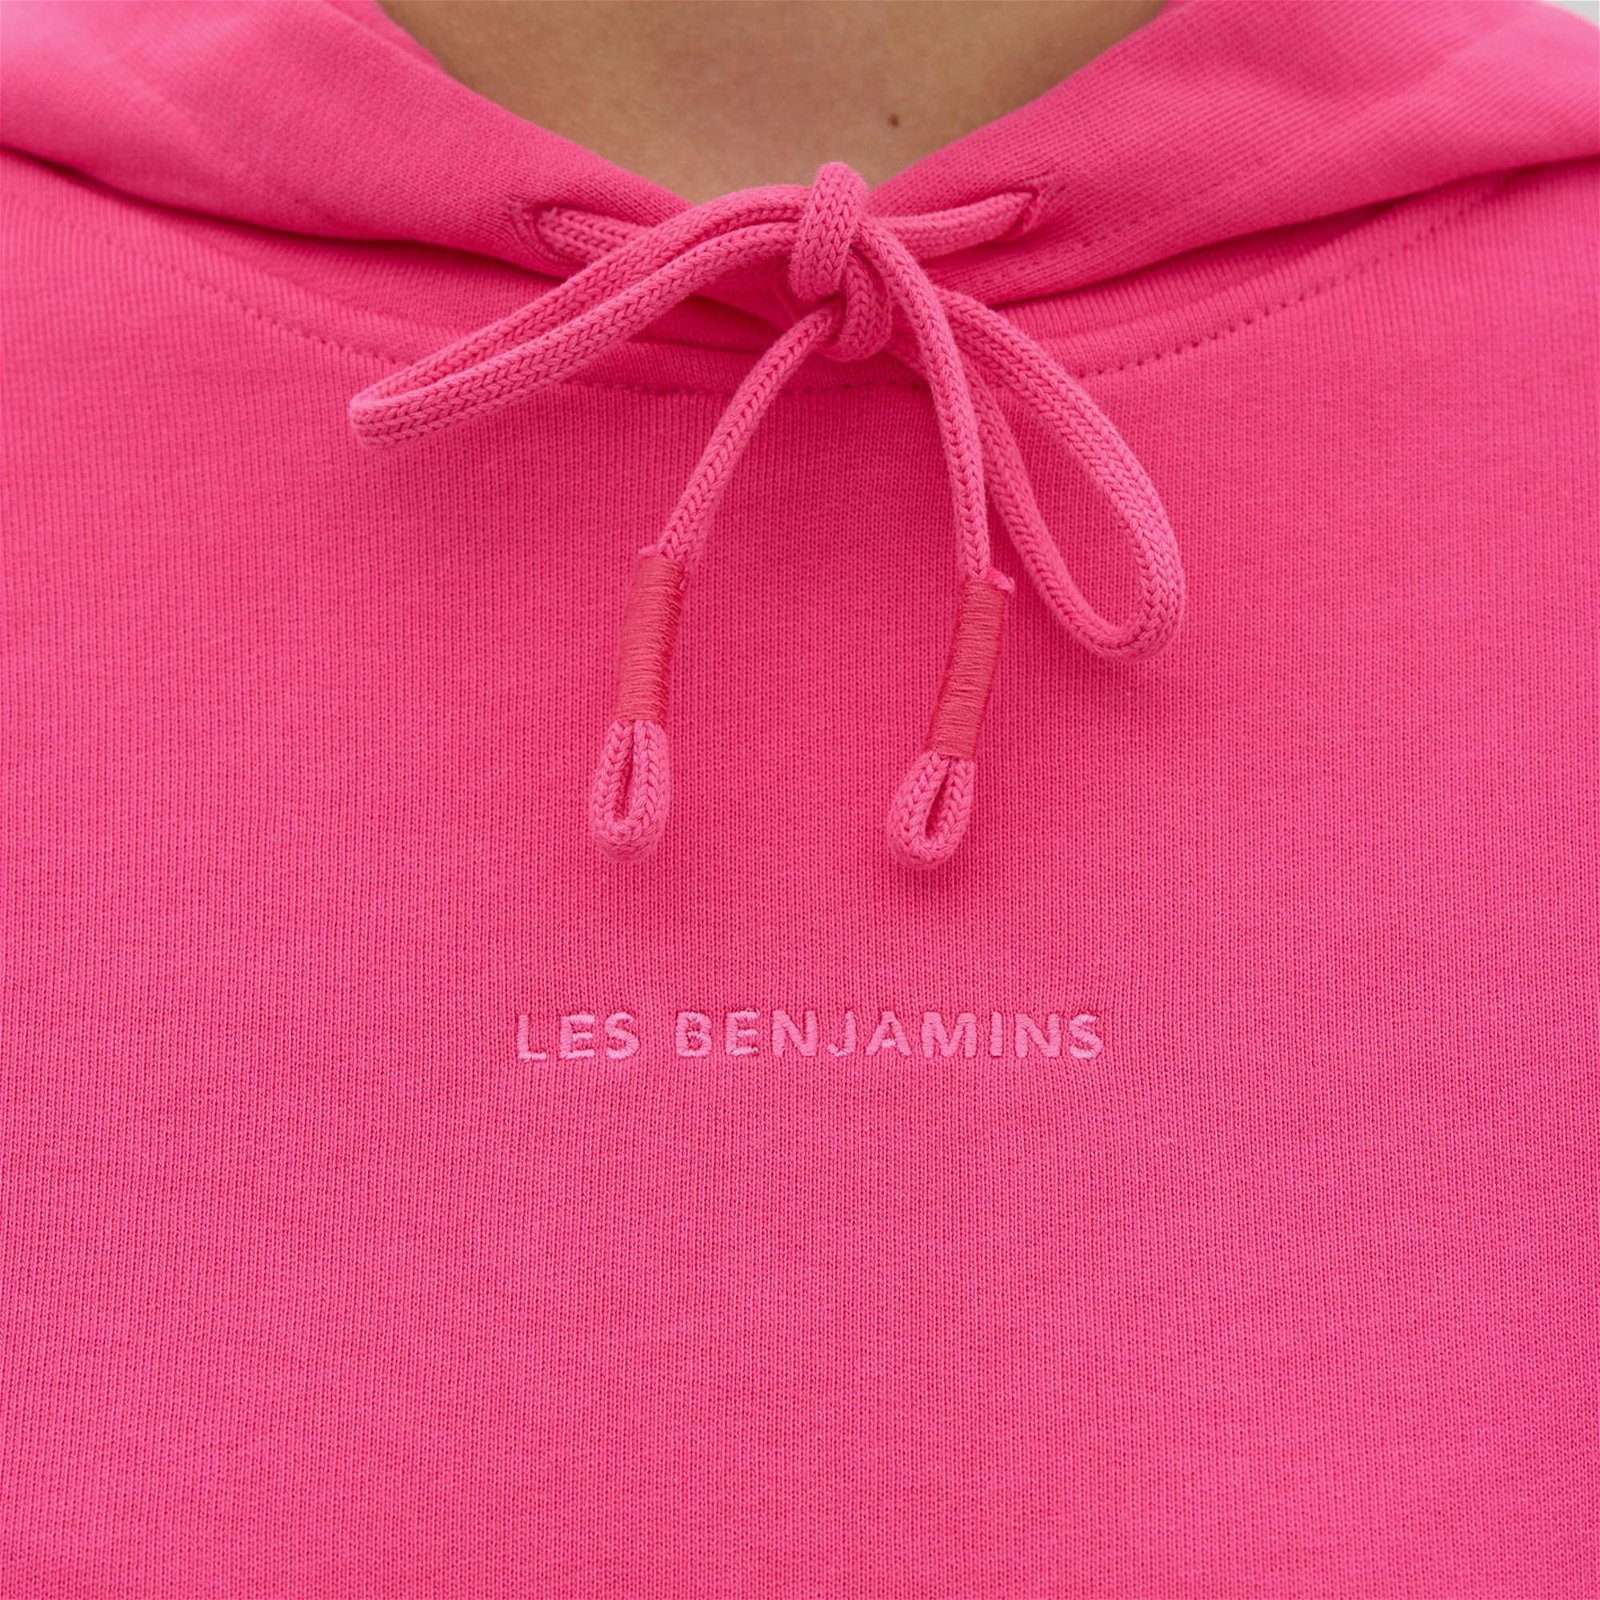 Les Benjamins Hoodie 305 Kadın Pembe Sweatshirt